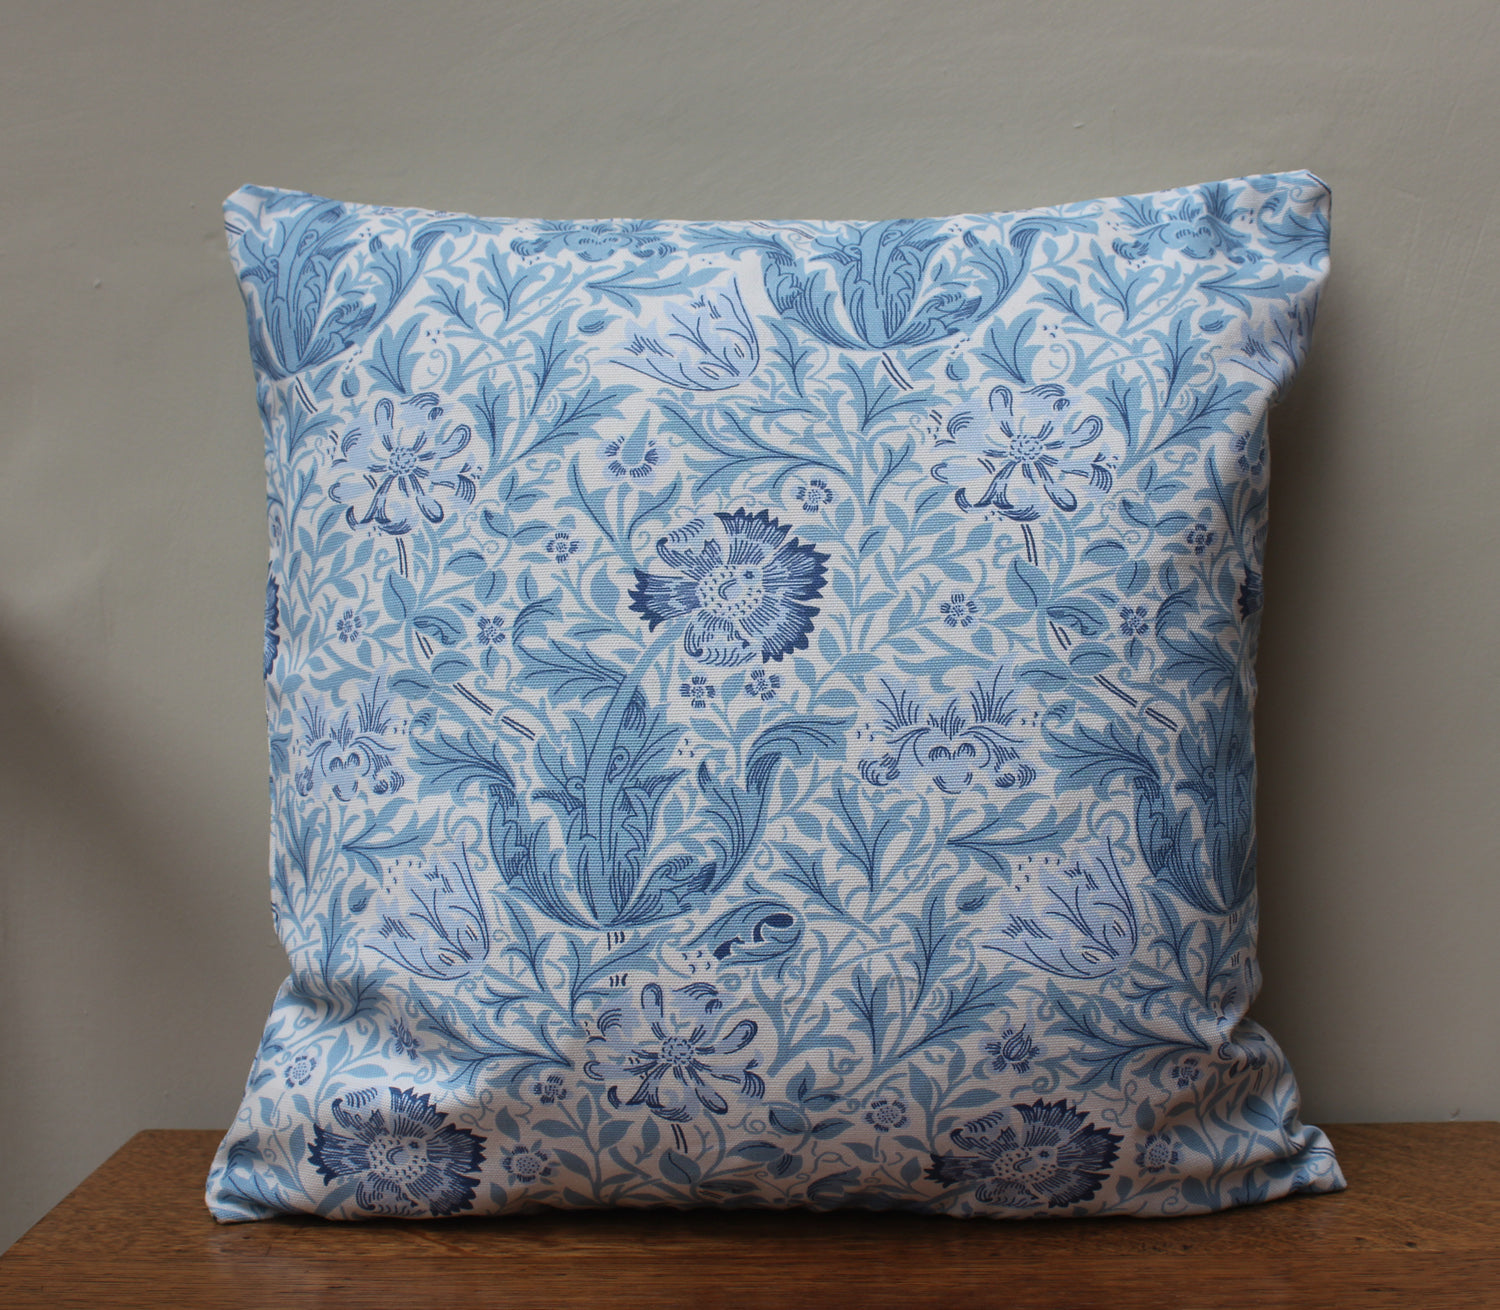 William Morris Gallery Compton Blue Cushion